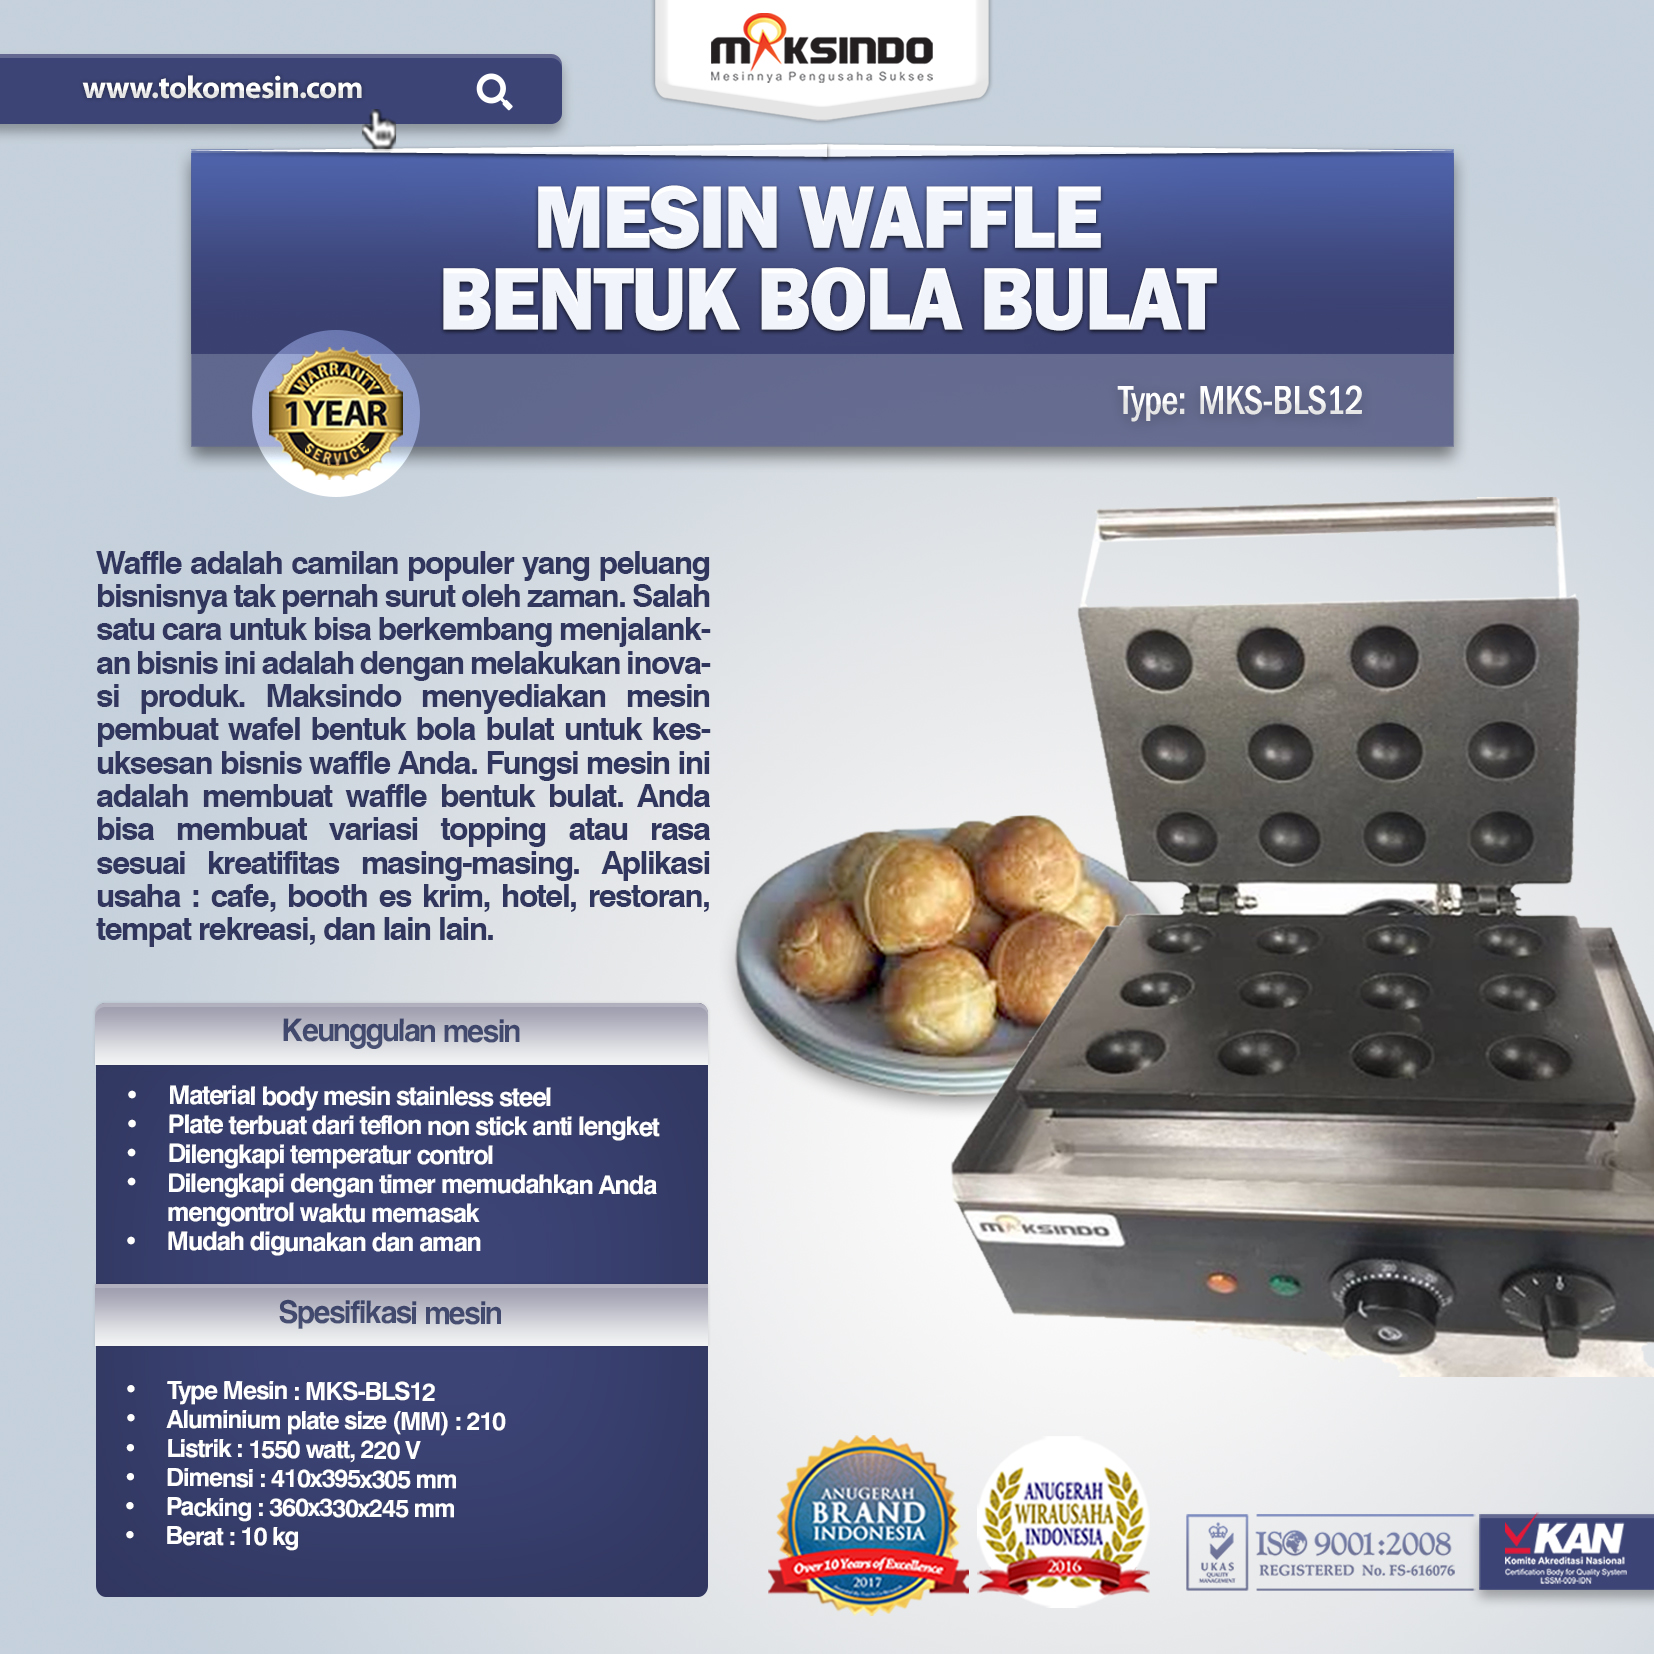 Jual Mesin Waffle Bentuk Bola Bulat (BLS12) di Banjarmasin